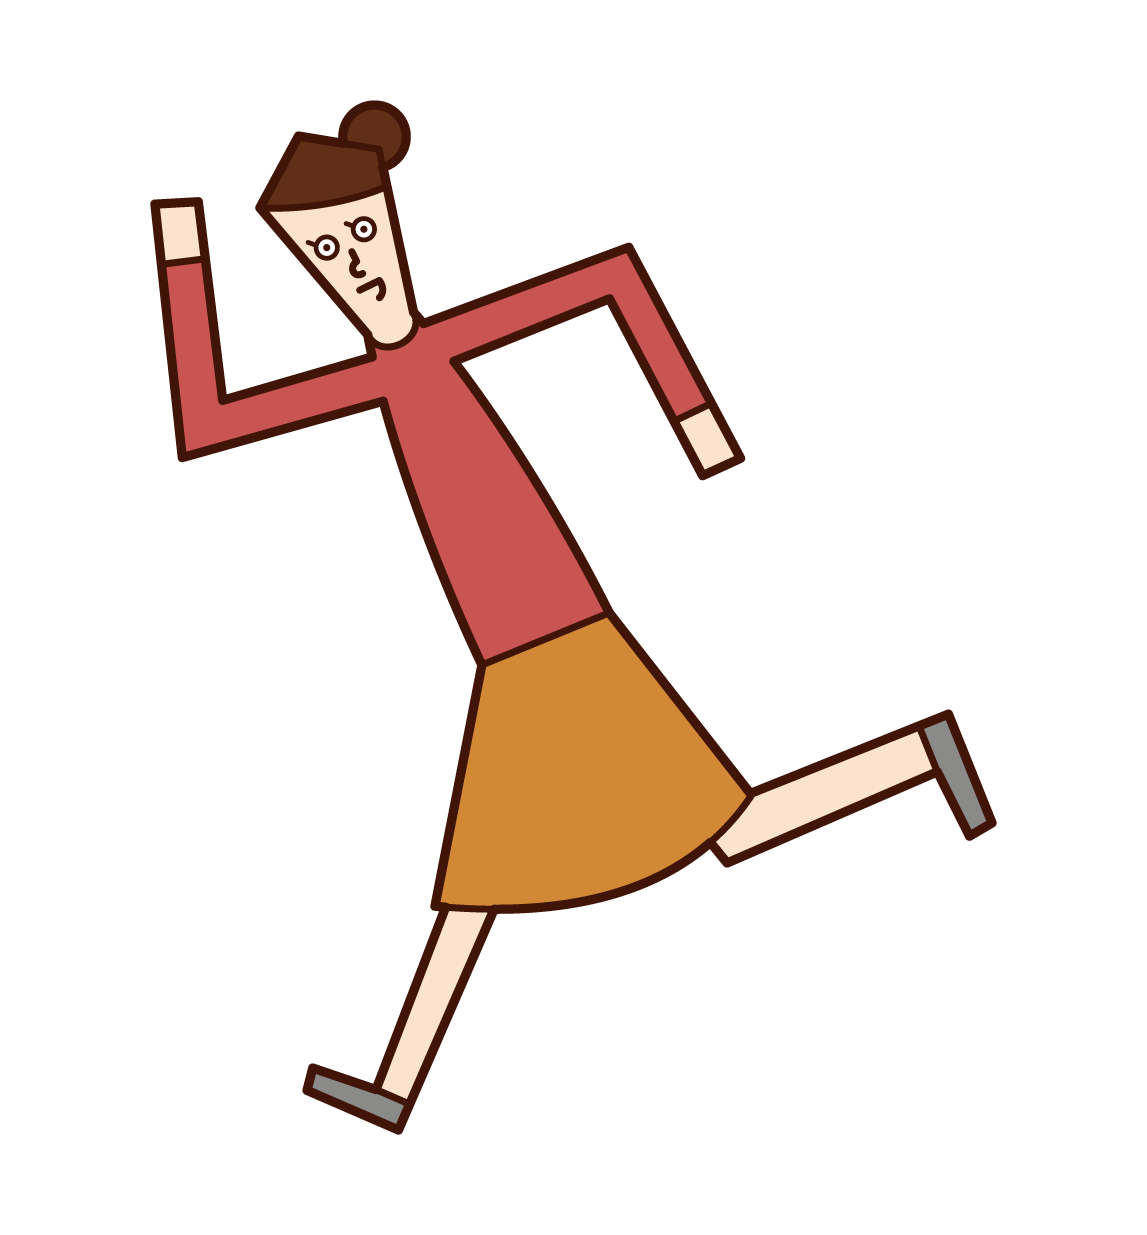 走るポーズをする人 女性 のイラスト フリーイラスト素材 Kukukeke ククケケ